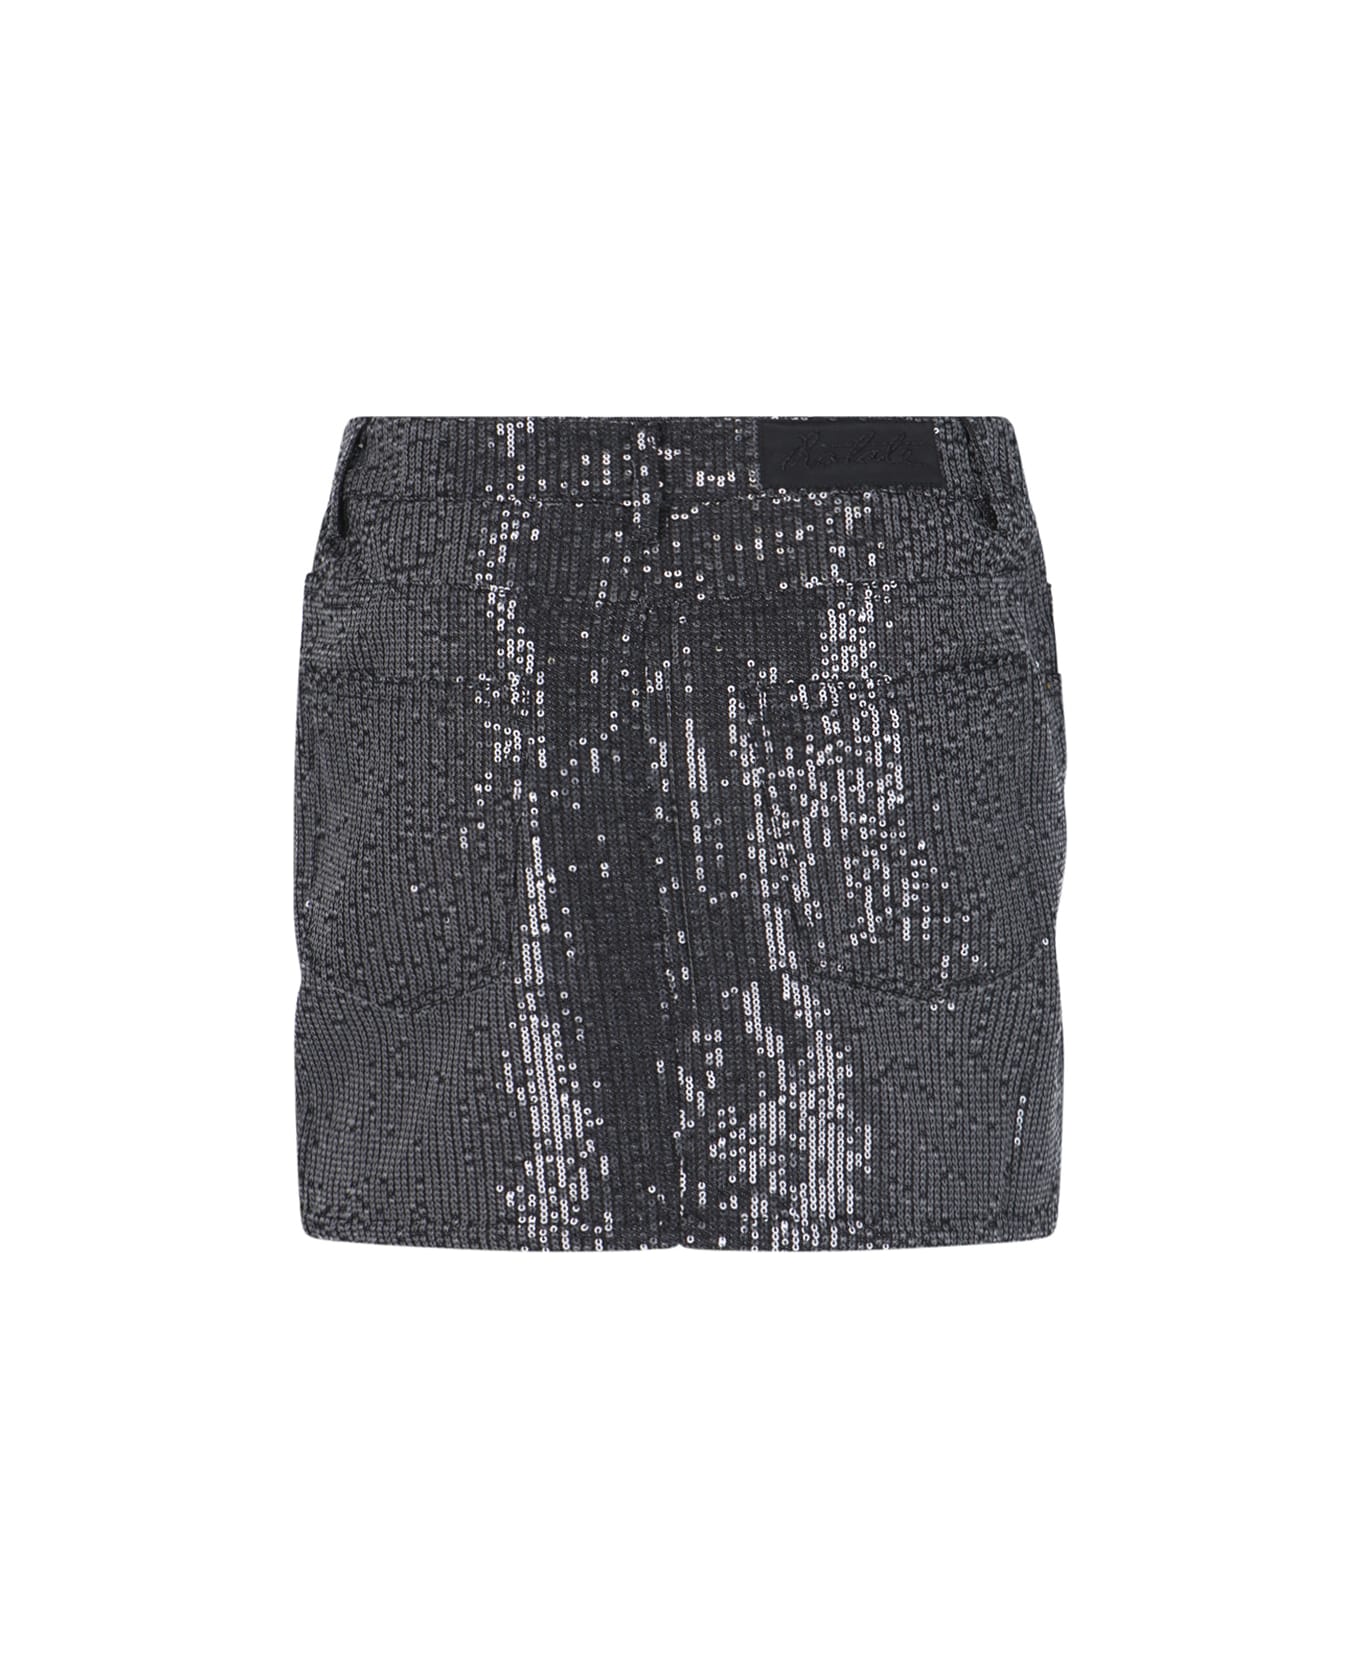 Rotate by Birger Christensen Sequin Mini Skirt - Black  